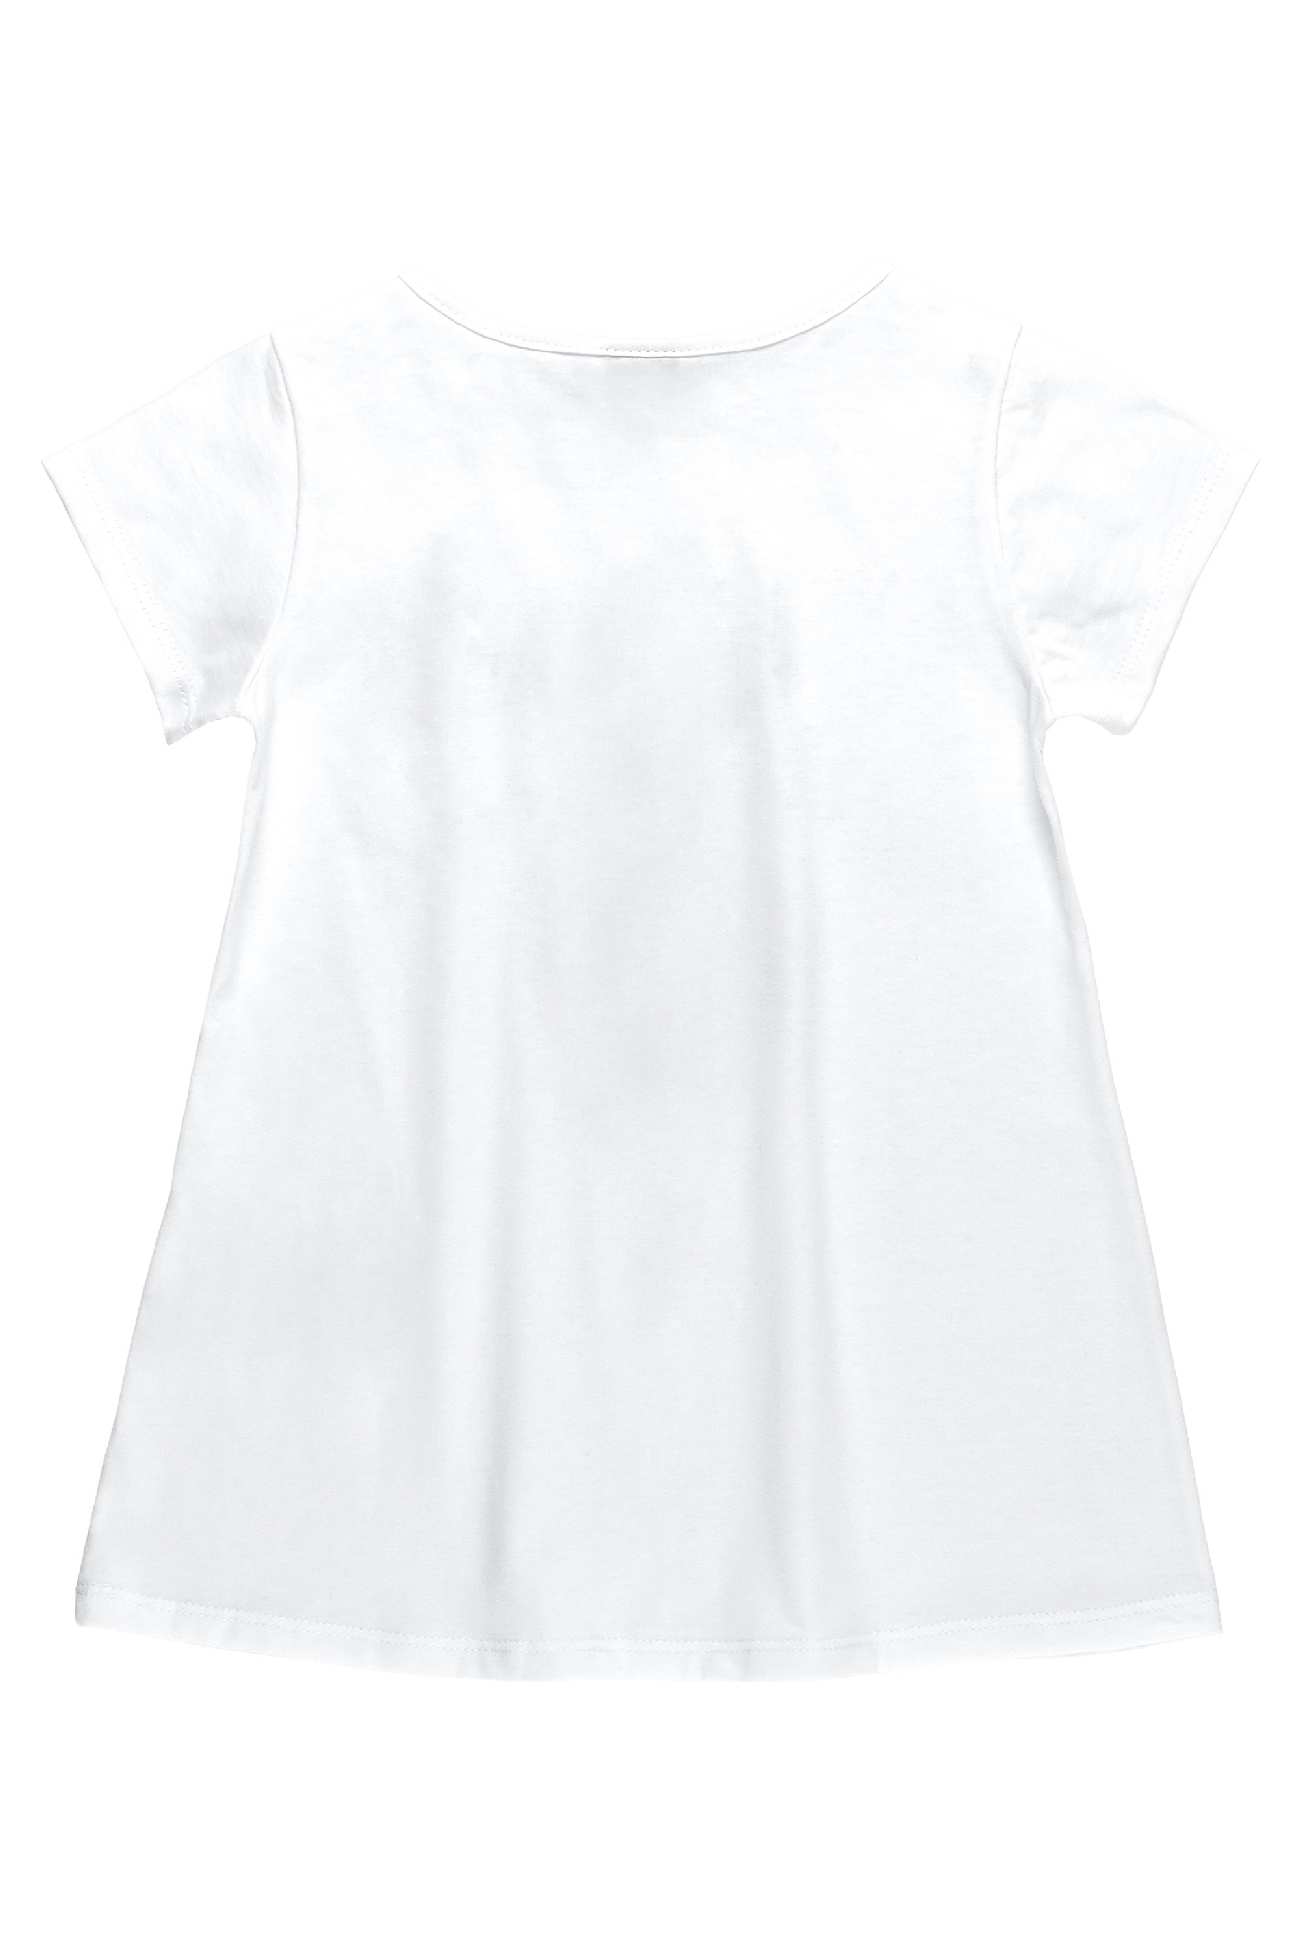 Komplet dziewczęcy, bluzka z krótkim rękawem i legginsy 3/4, biały, Bee Loop